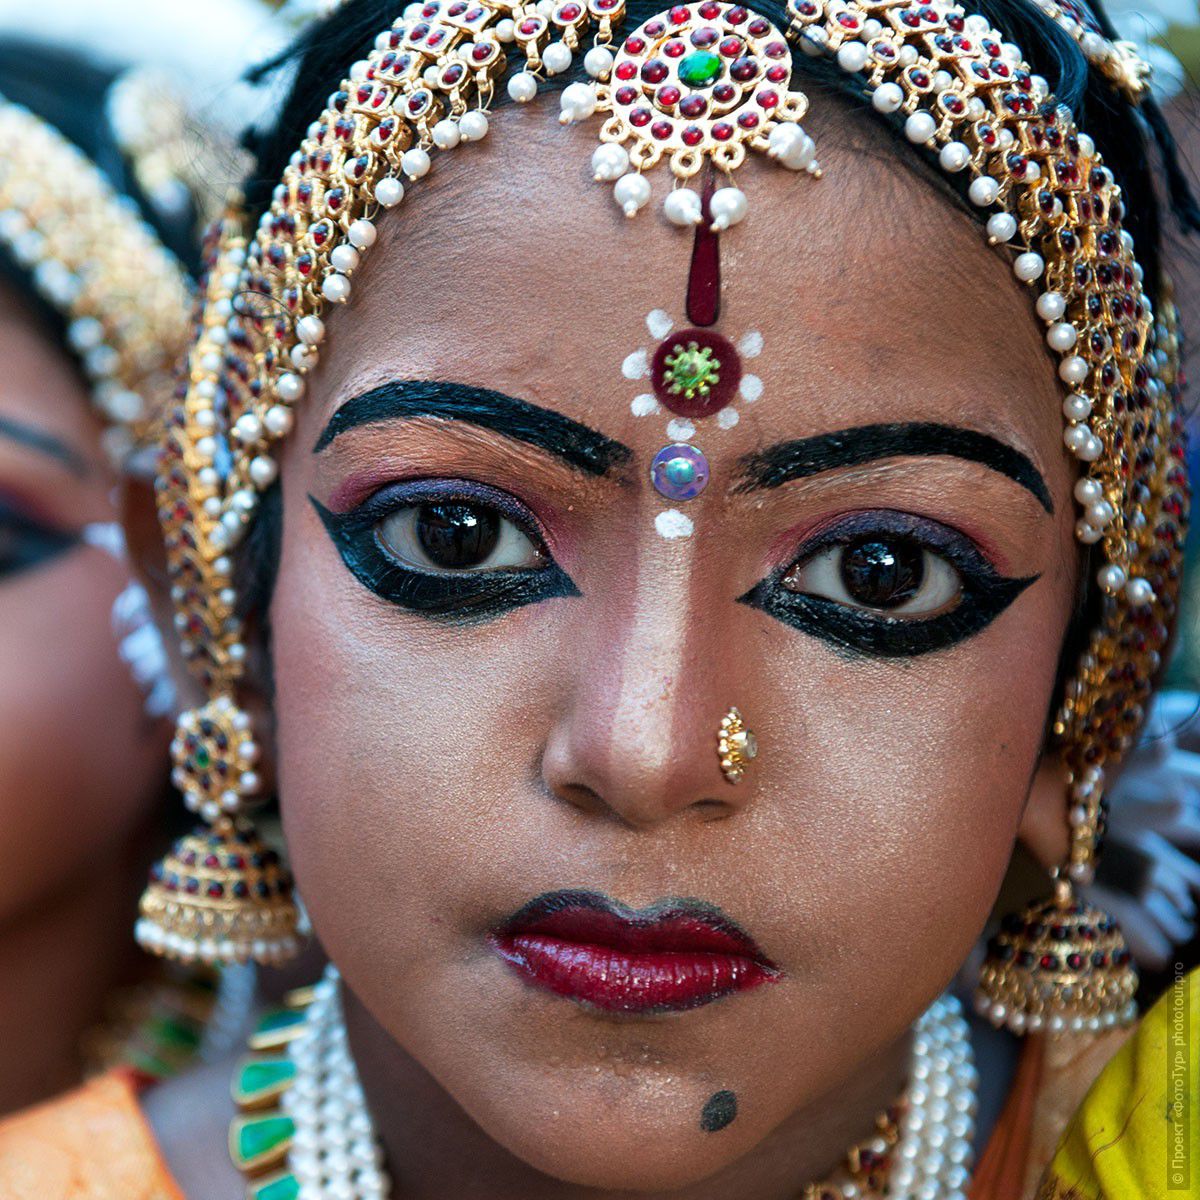 Фотография индийской девочки-танцовщицы на празднике Шри Махашиваратри, 20.02.2012г., Тривандрум. Фототур в Кералу.